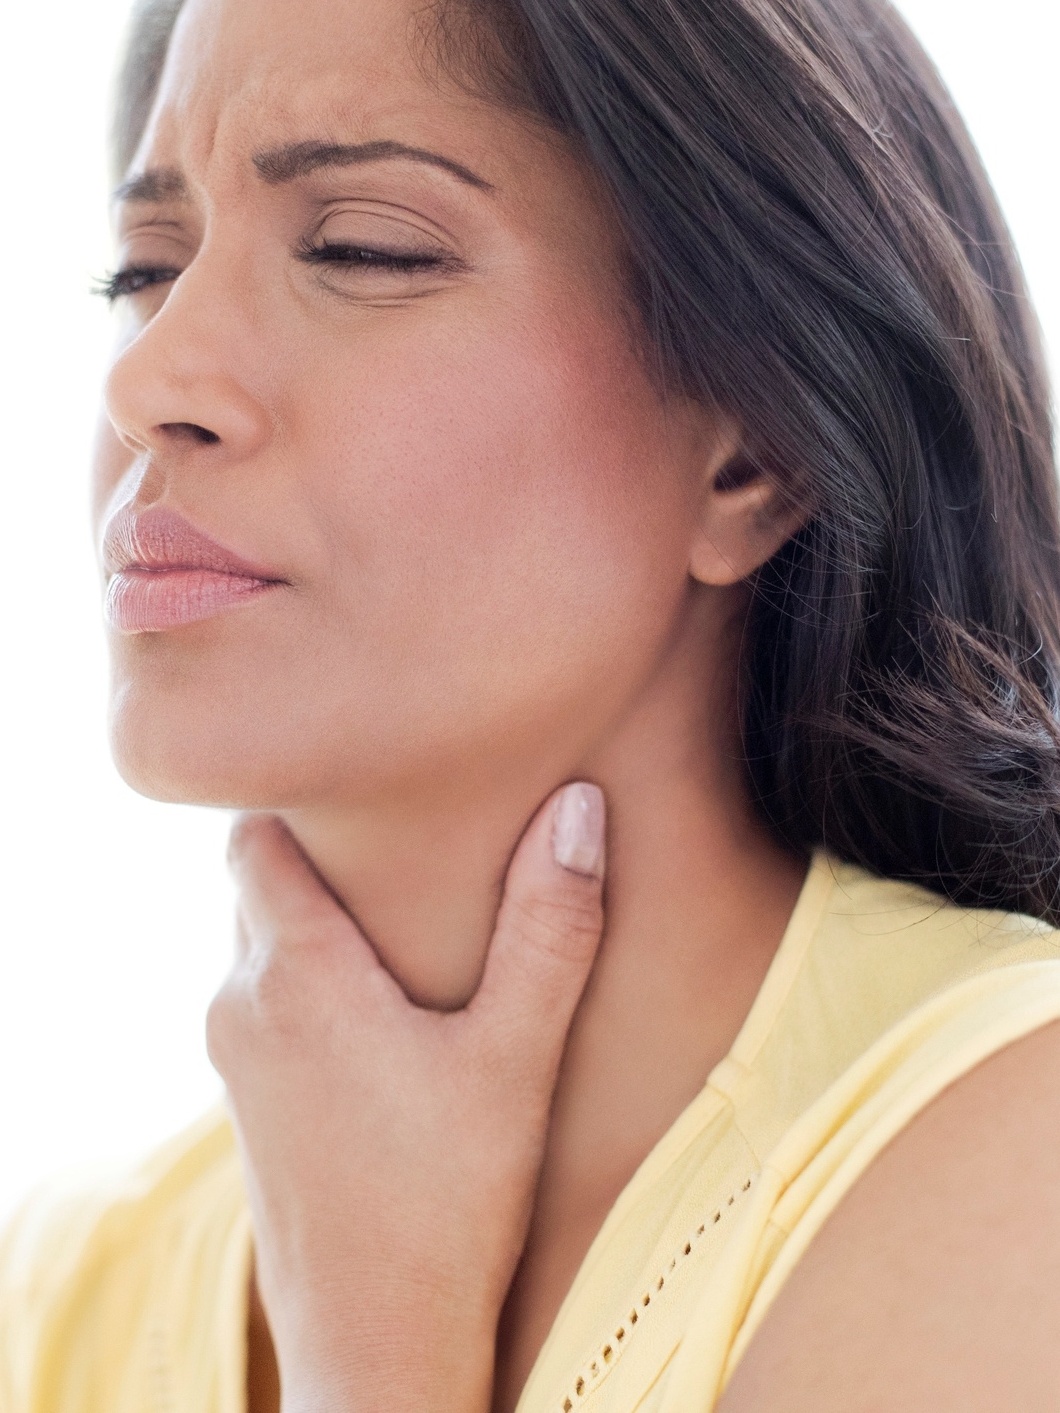 Infecção da garganta - Distúrbios do ouvido, nariz e garganta